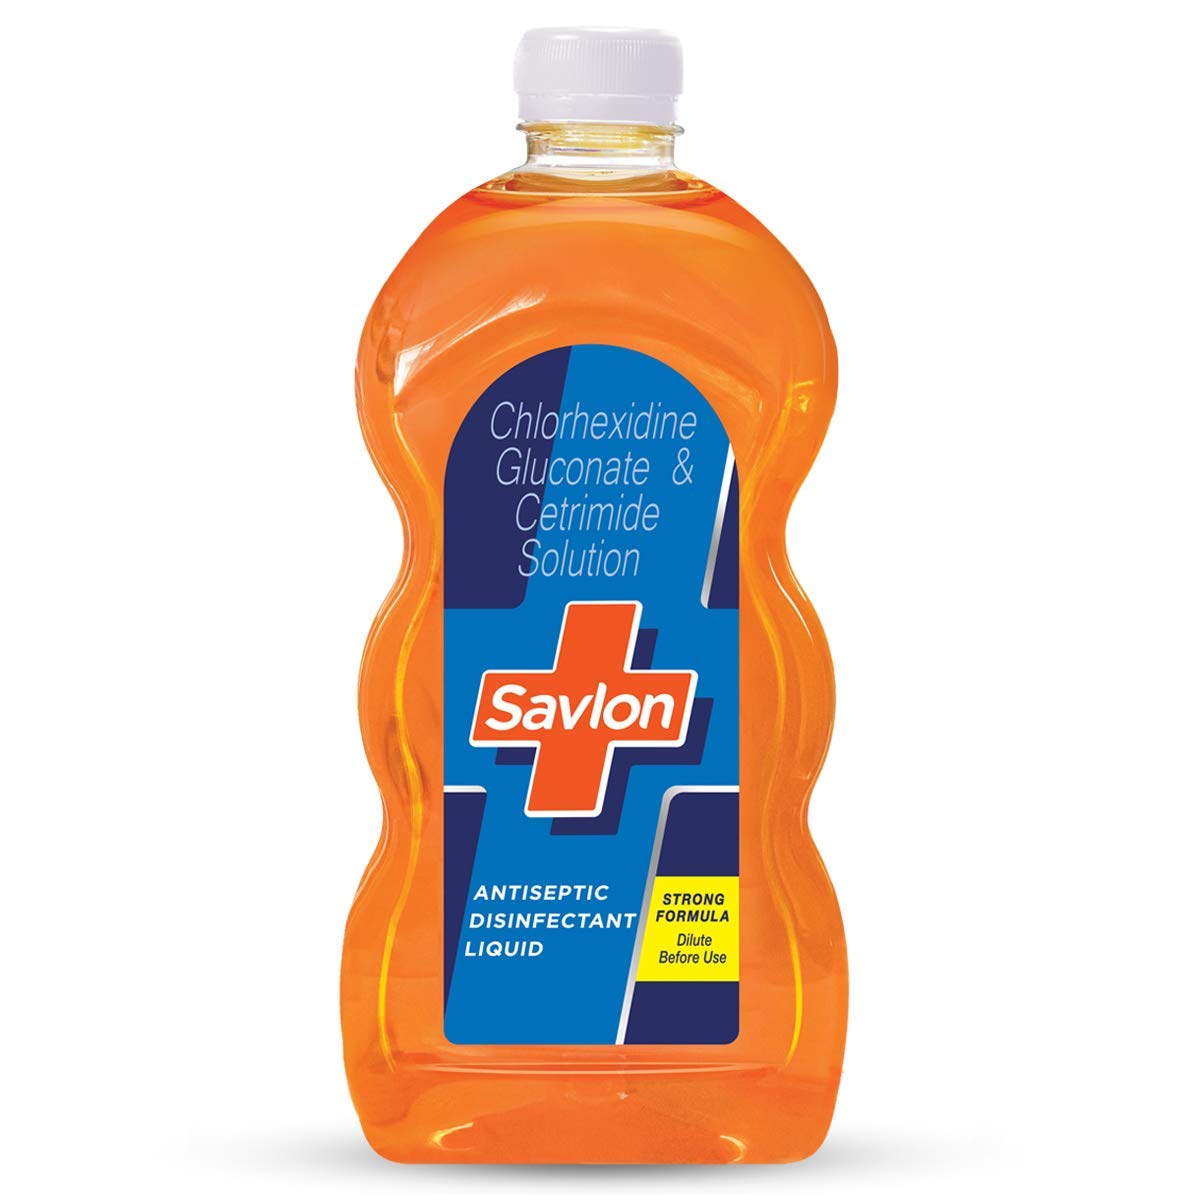 Savlon Antiseptic Disinfectant Liquid (50 ML)